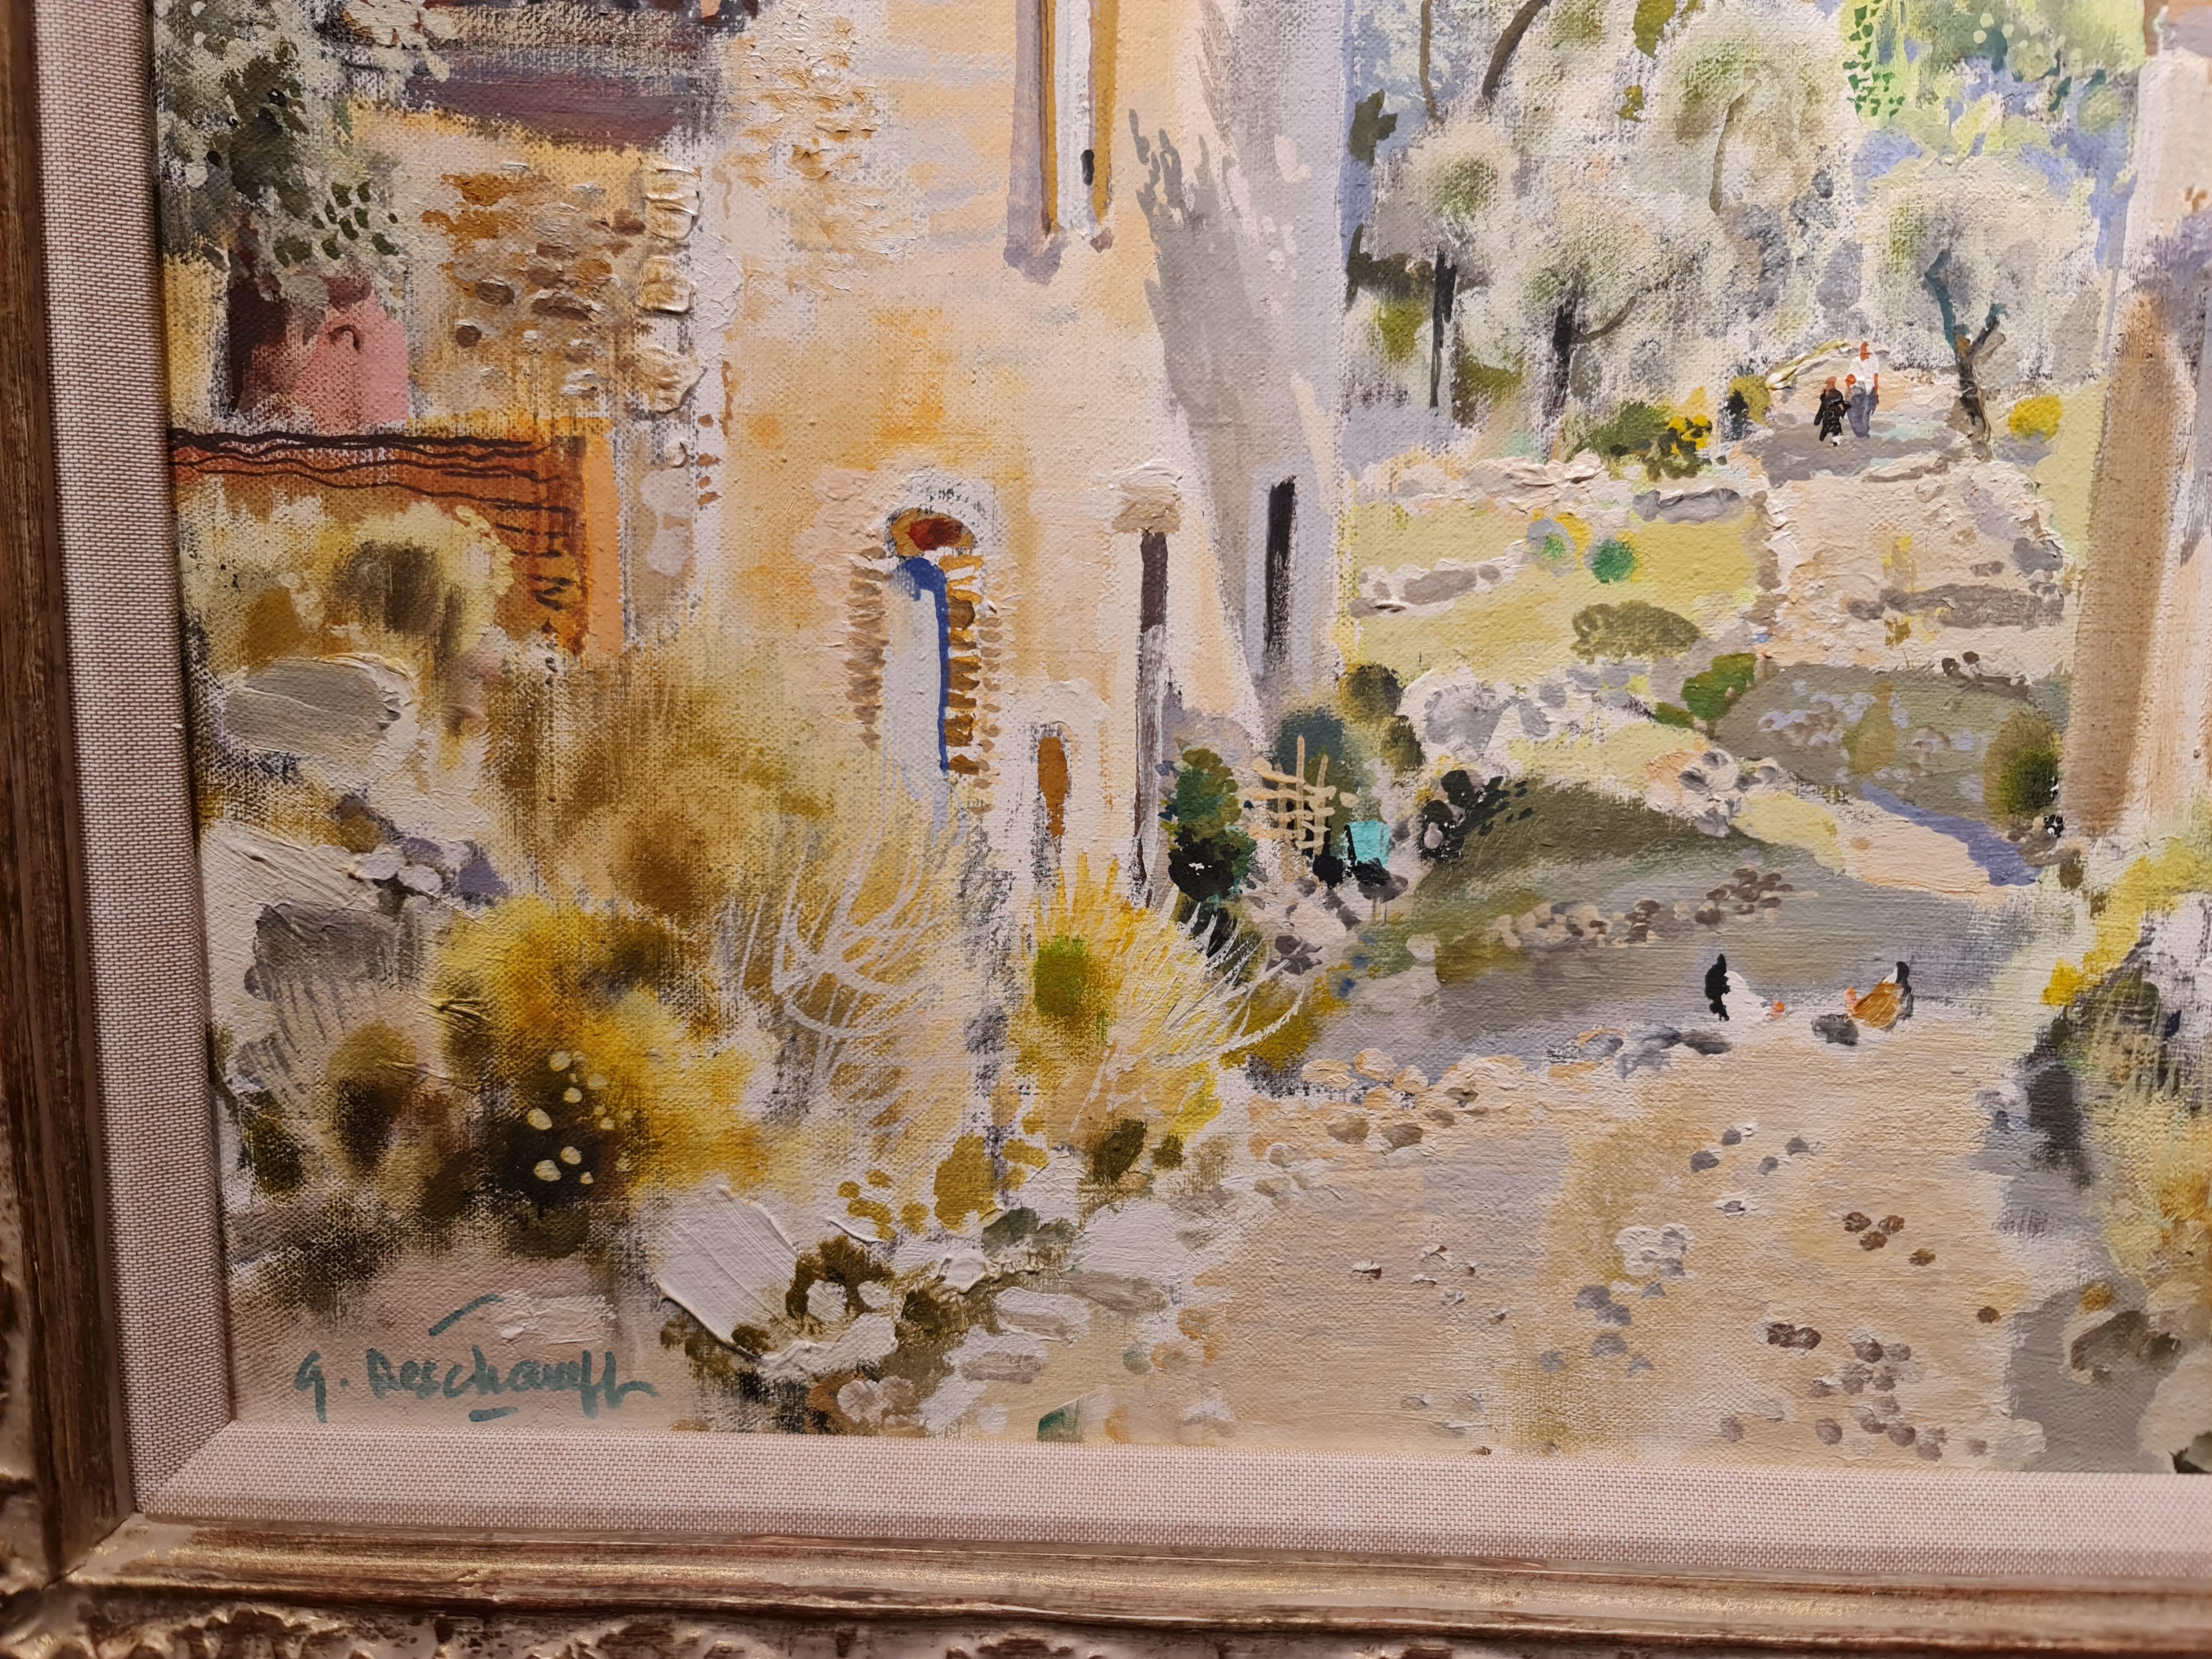 En Provence
par Gabriel Deschamps
Français 1919 - 2011

Huile sur toile
Taille de la toile : 18 x 21.75 pouces
Taille encadrée : 26 x 29.5 pouces

Signé en bas à gauche